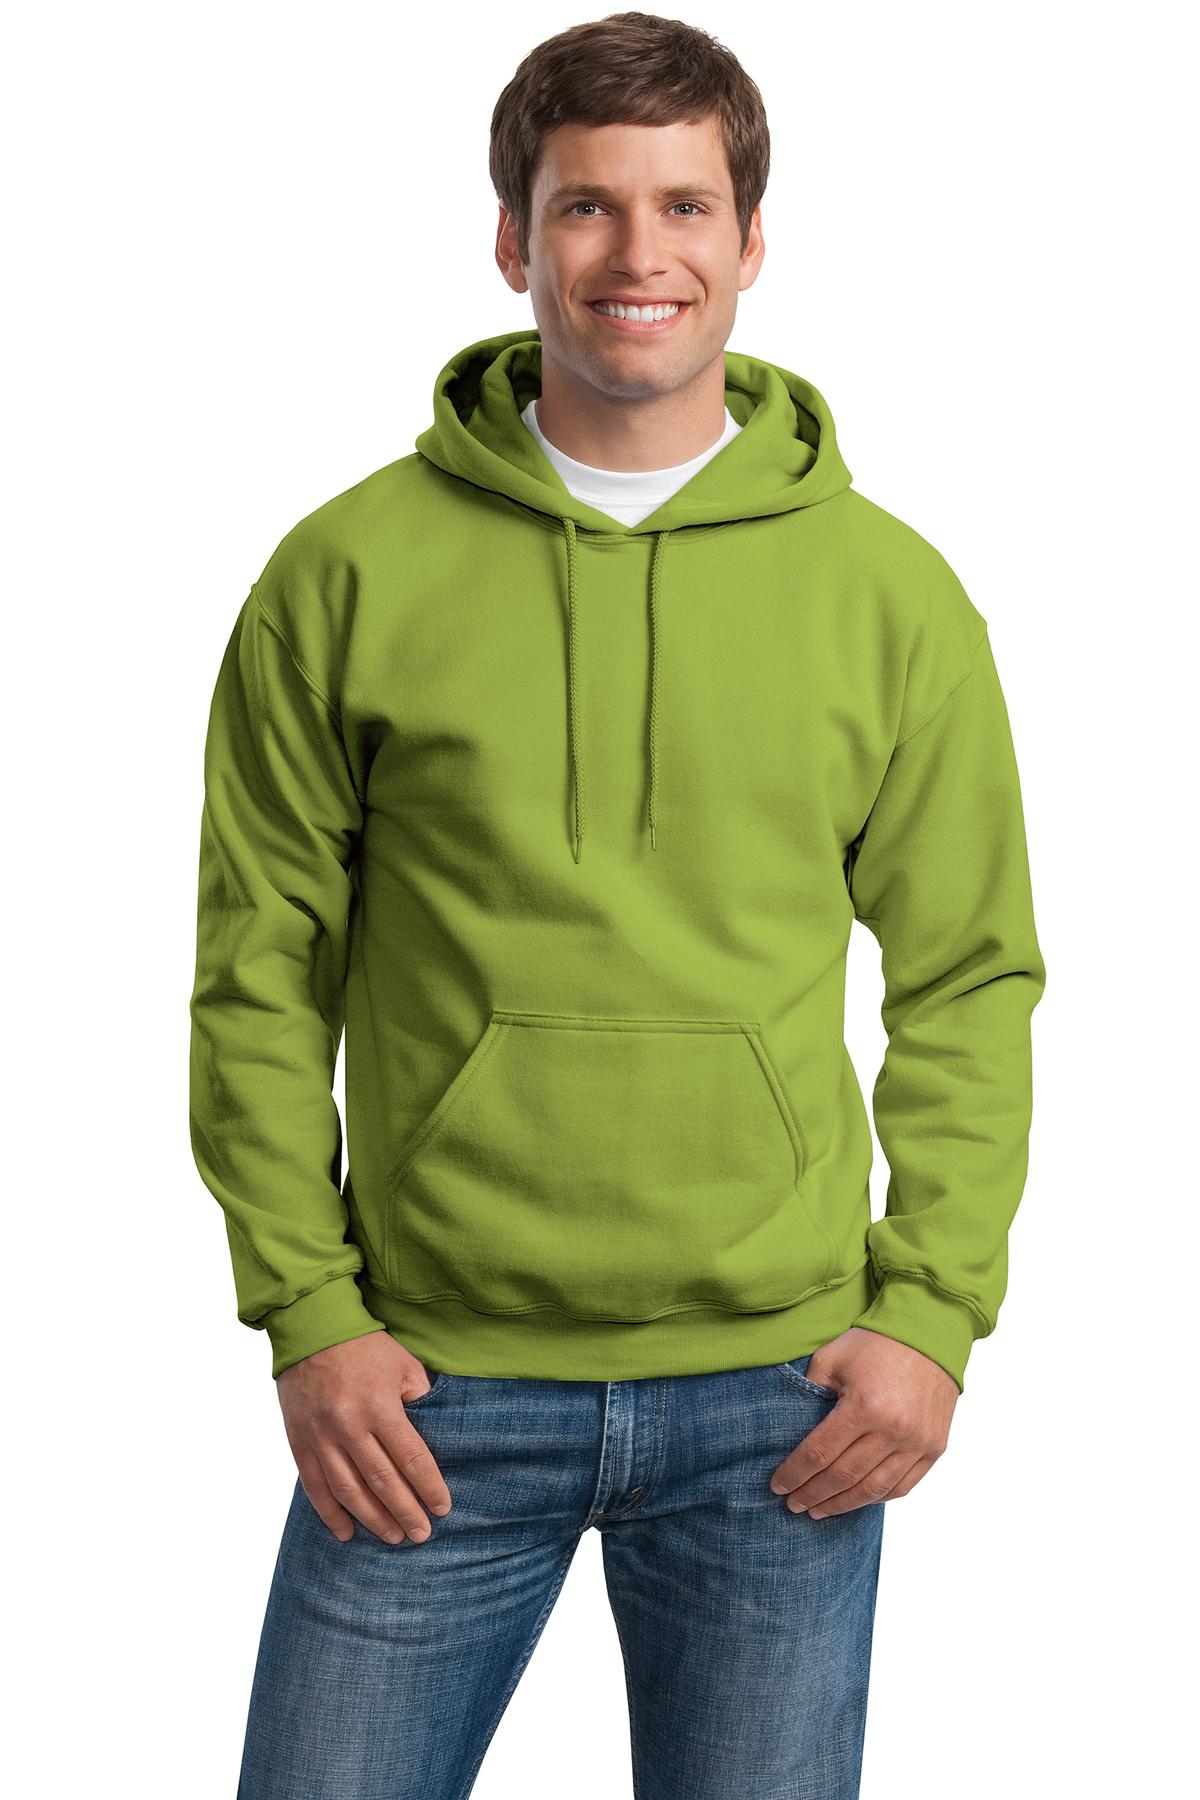 Gildan Men’s Heavy Blend Hooded Sweatshirt. 18500.